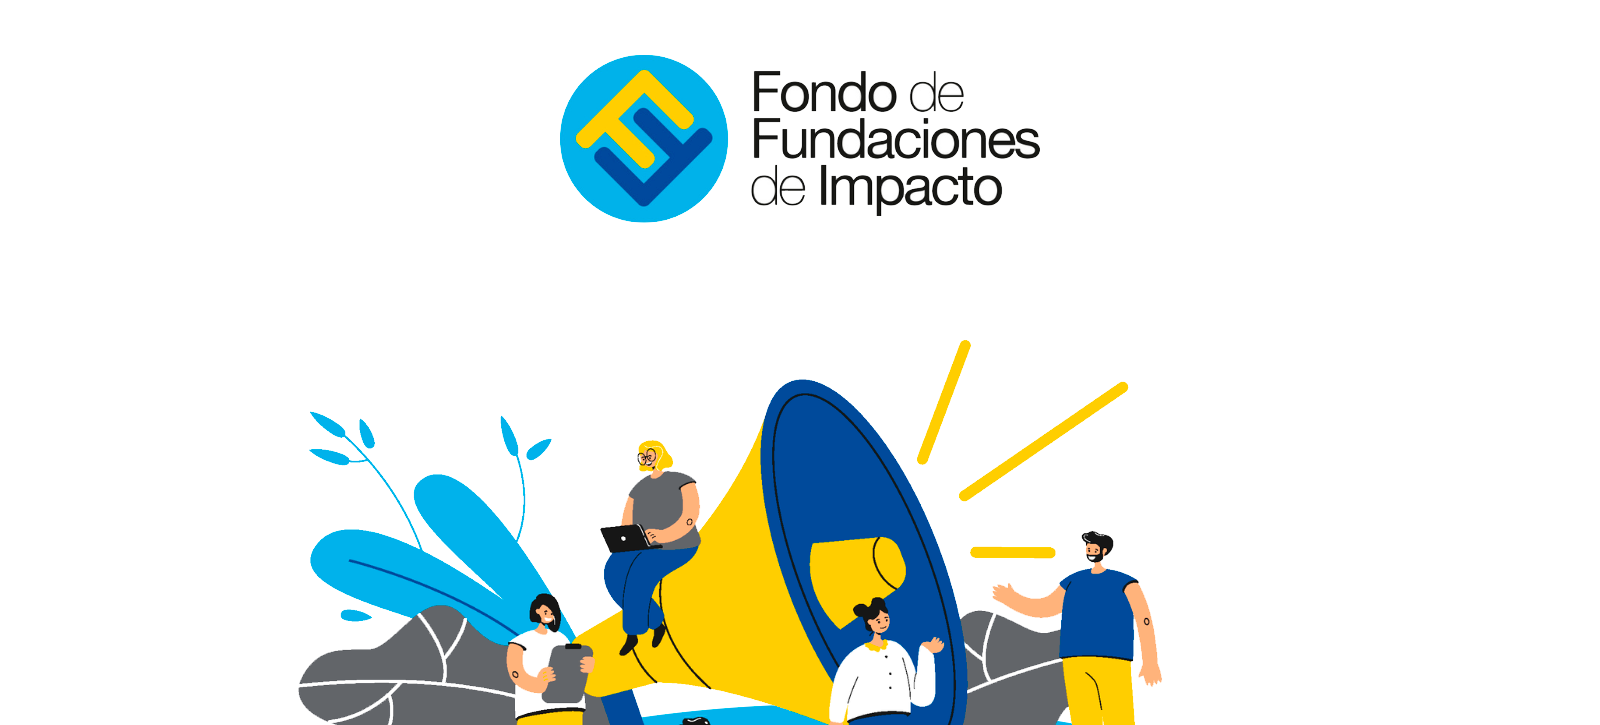 Nuestra participación en el Fondo de Fundaciones de Impacto